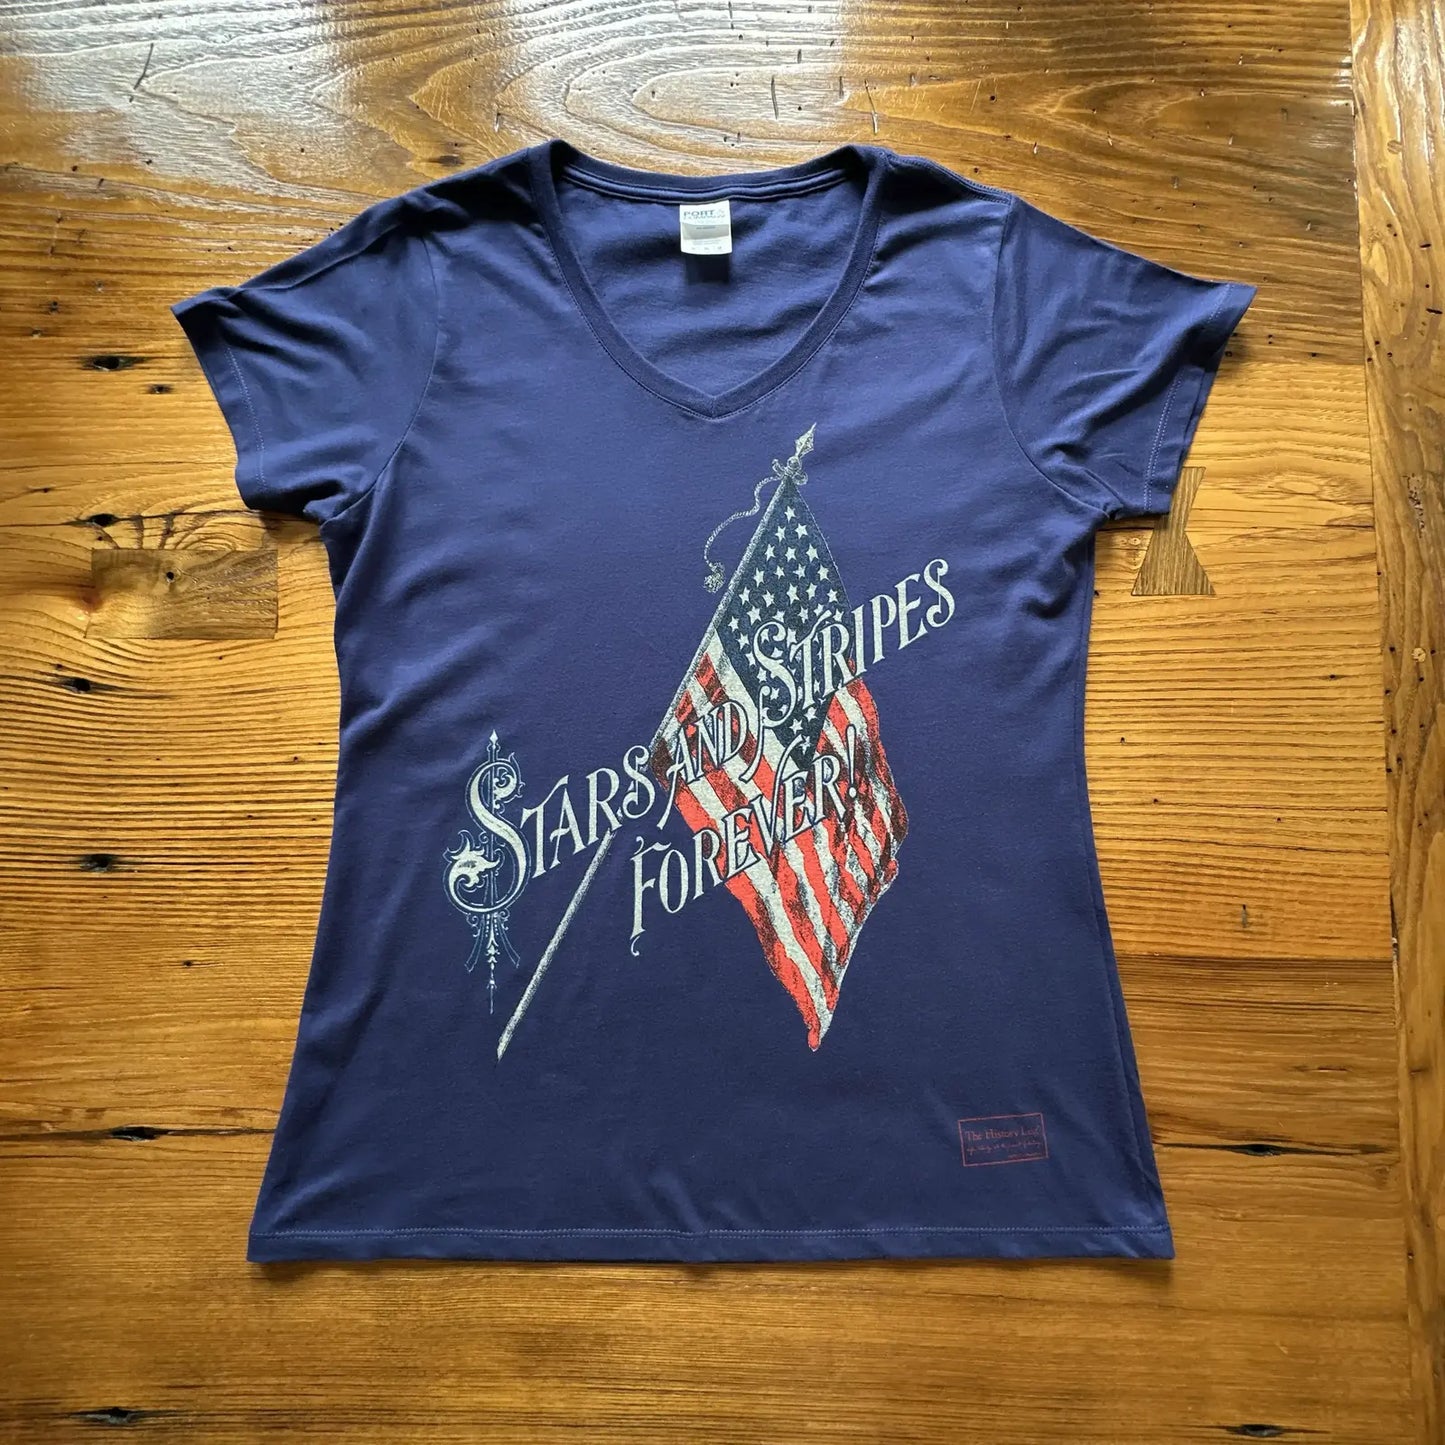 "Stars and Stripes Forever" Women's v-neck shirt